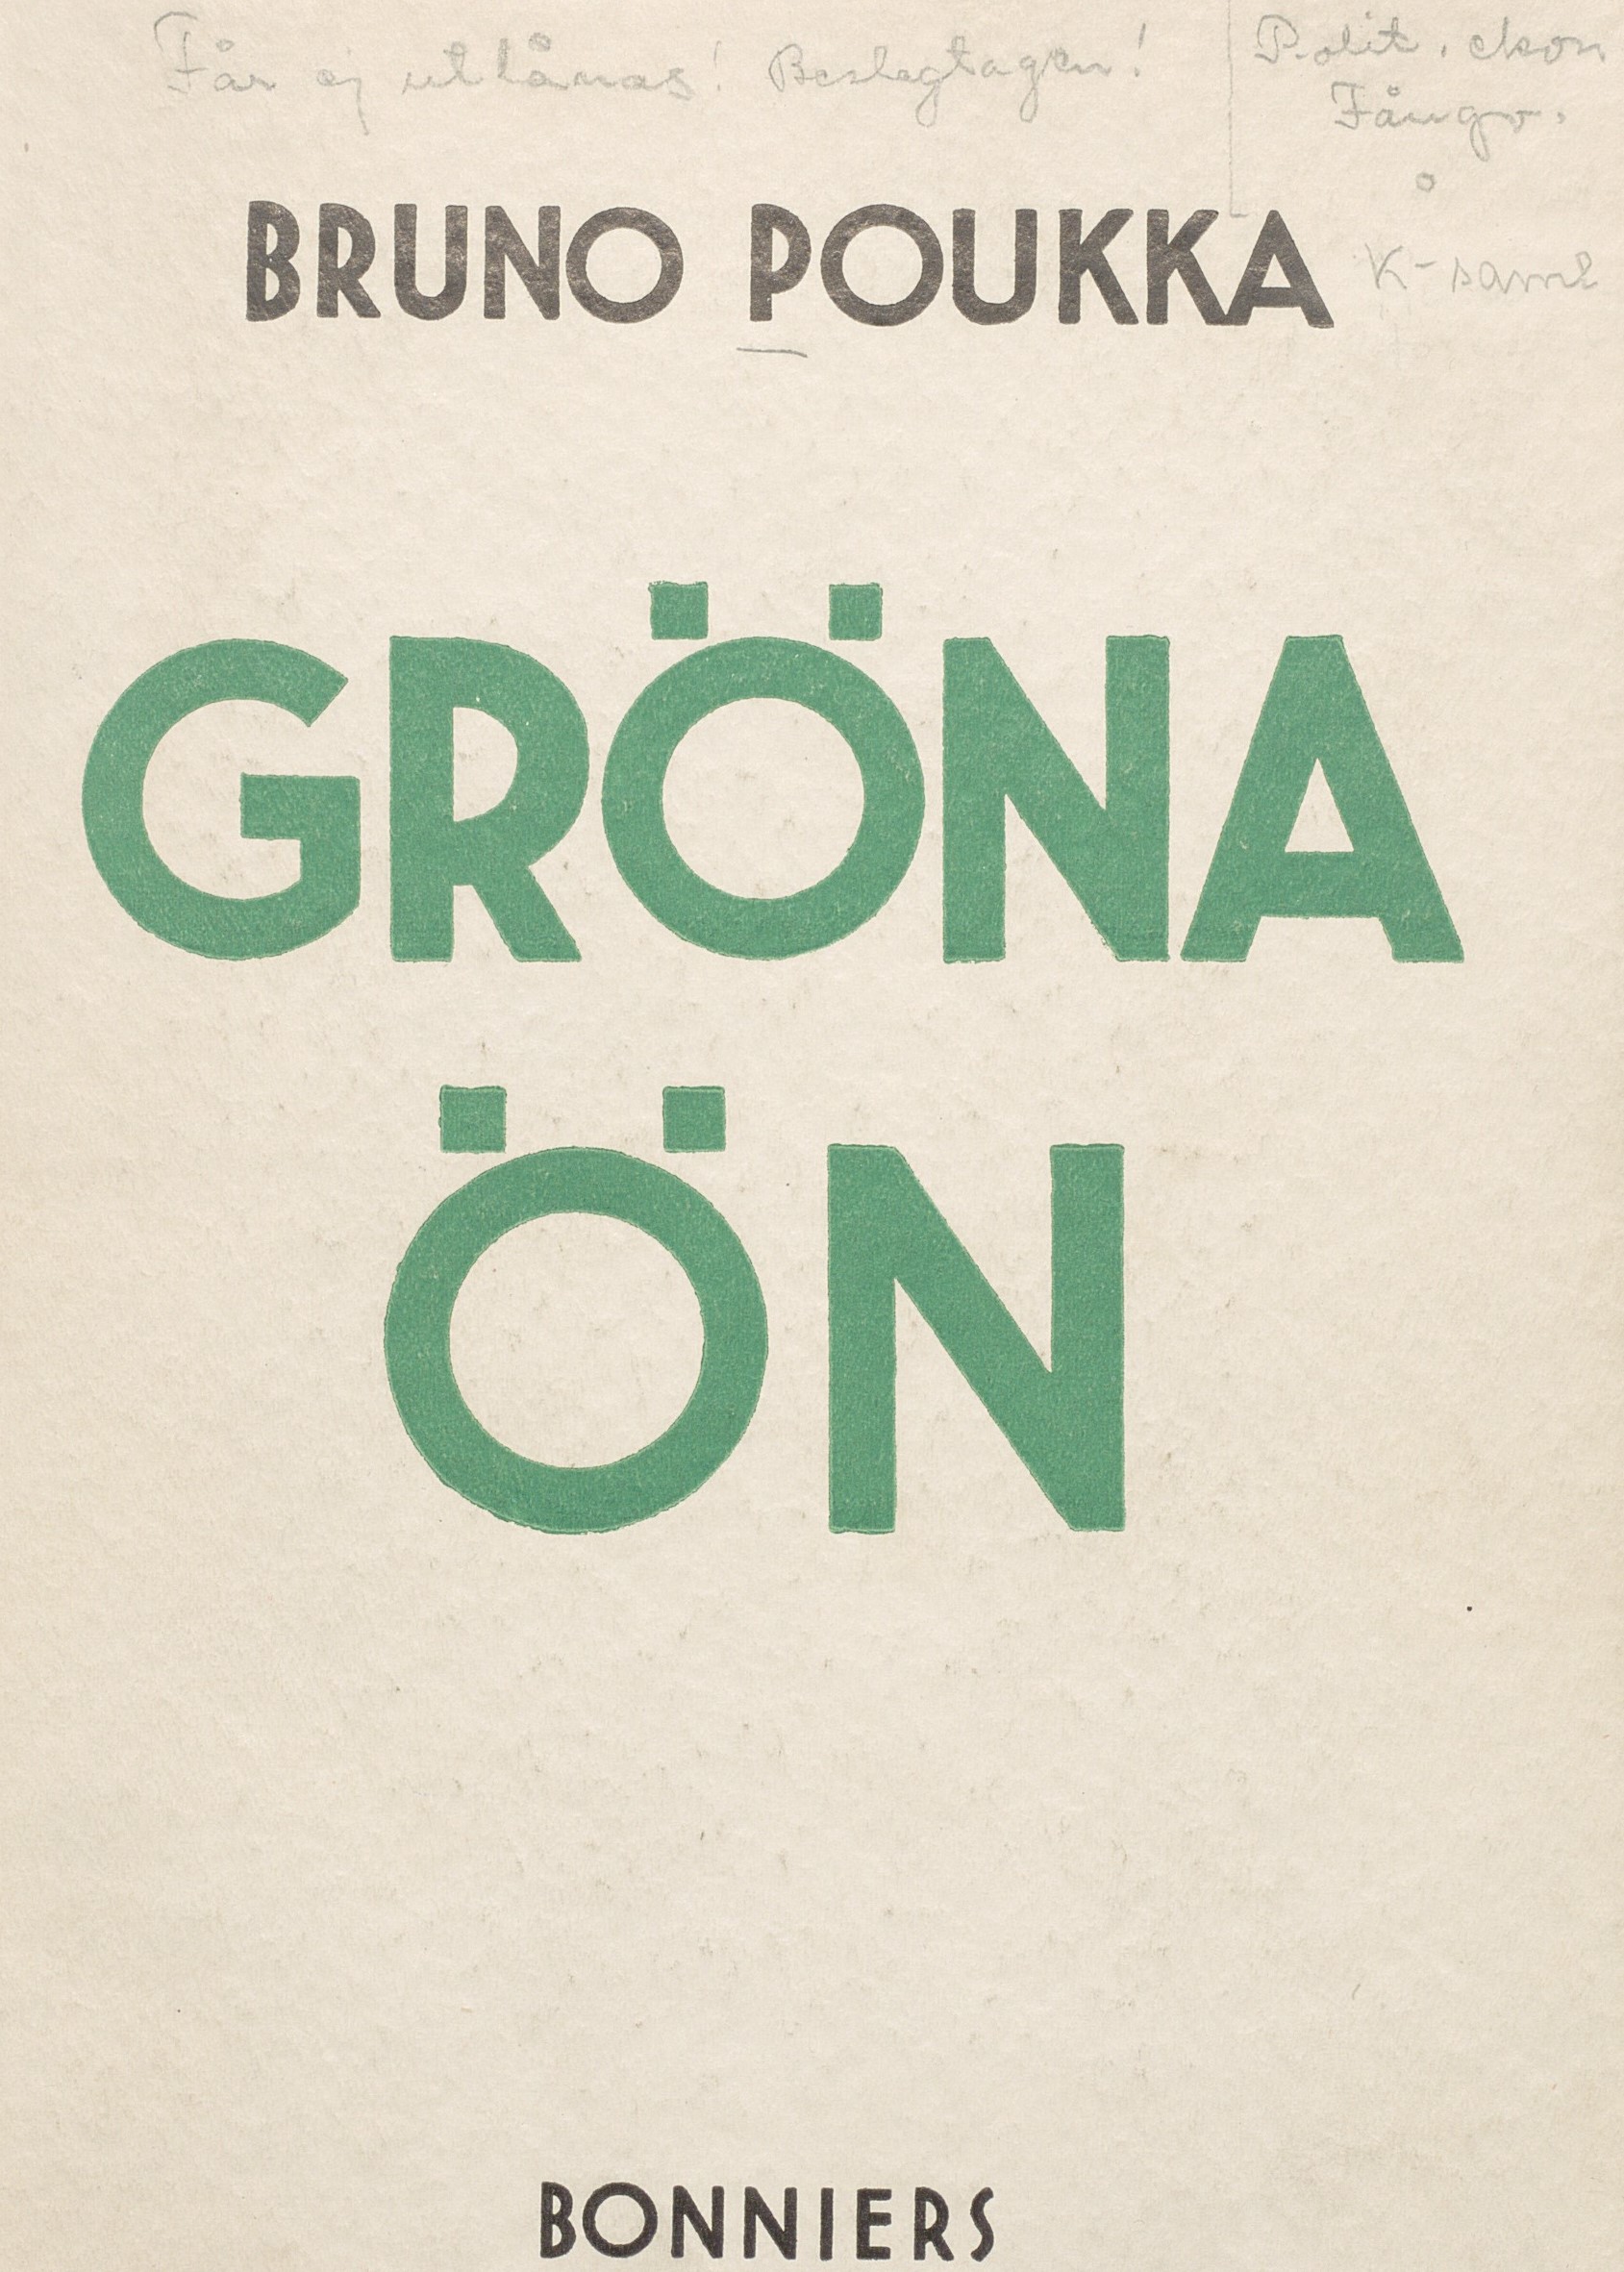 Bokomslag till "Gröna ön" i vitt, svart och grönt. Notering i blyerts att exemplaret beslagtagits och placerats i K-samlingen.